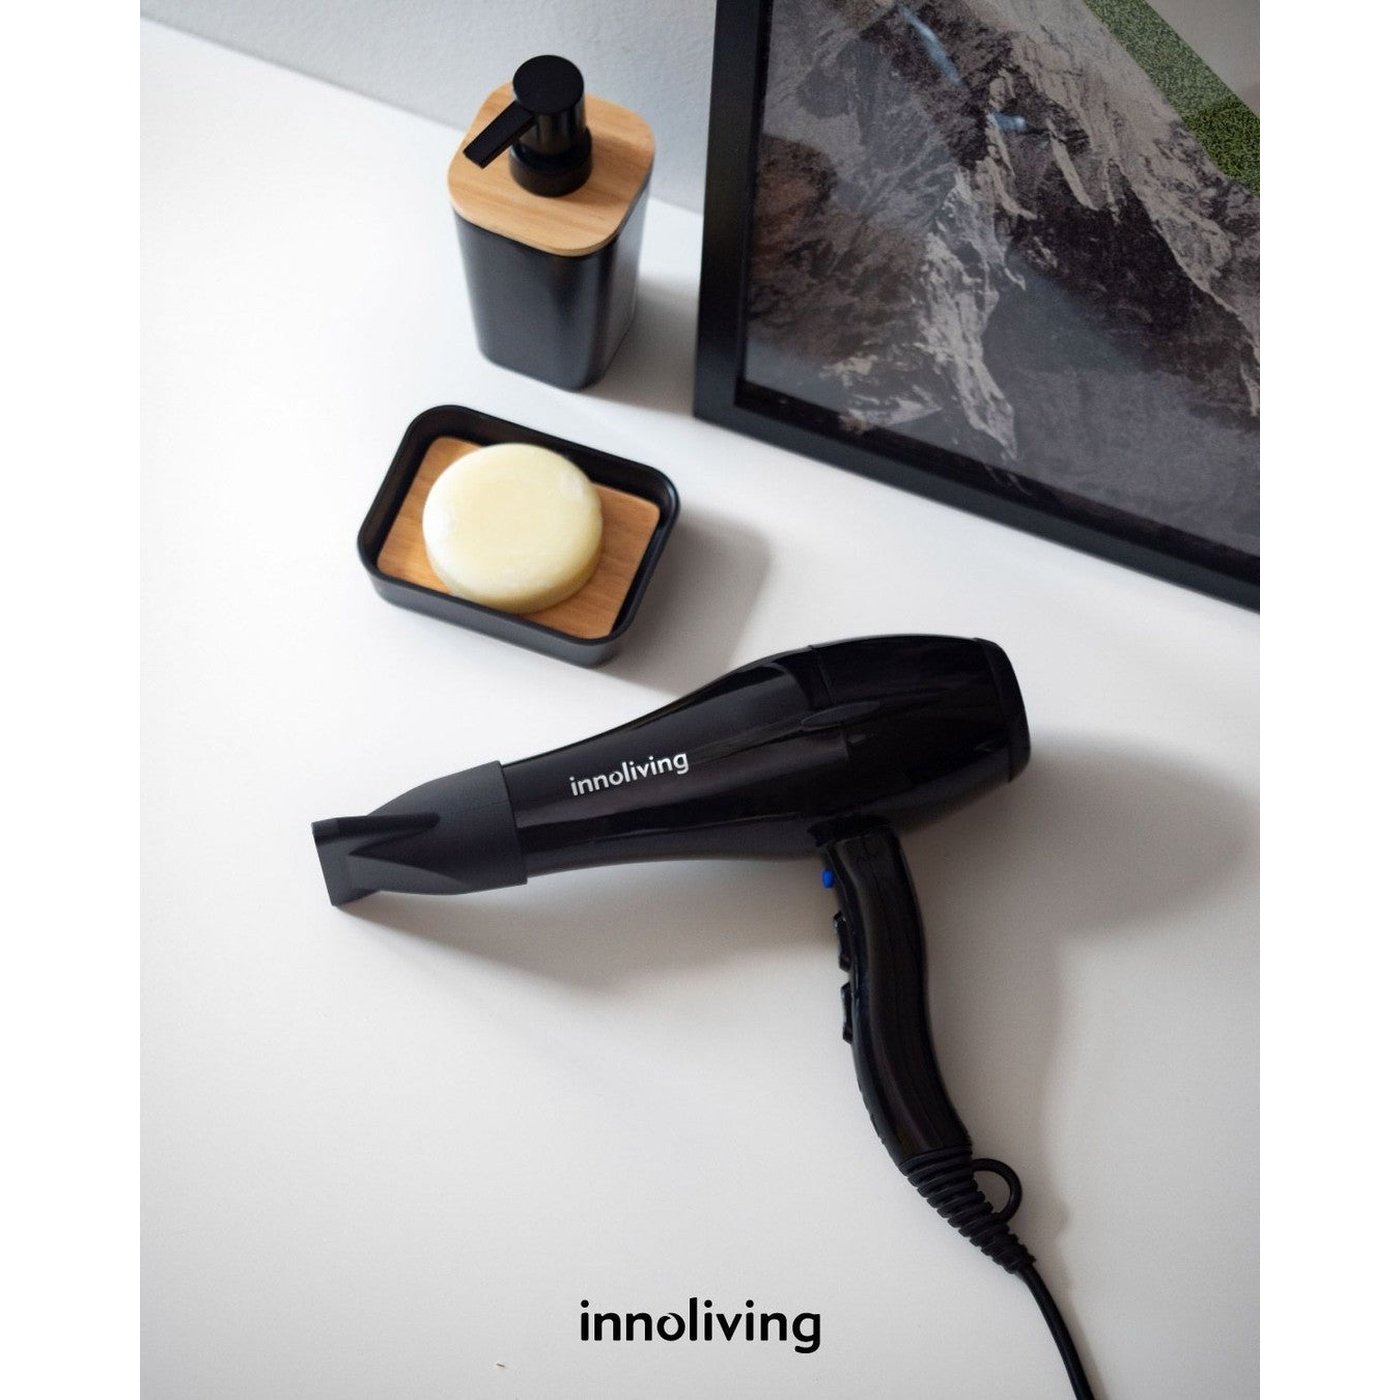 Innoliving INN-617 Professional Hair Dryer, 2000W, Black